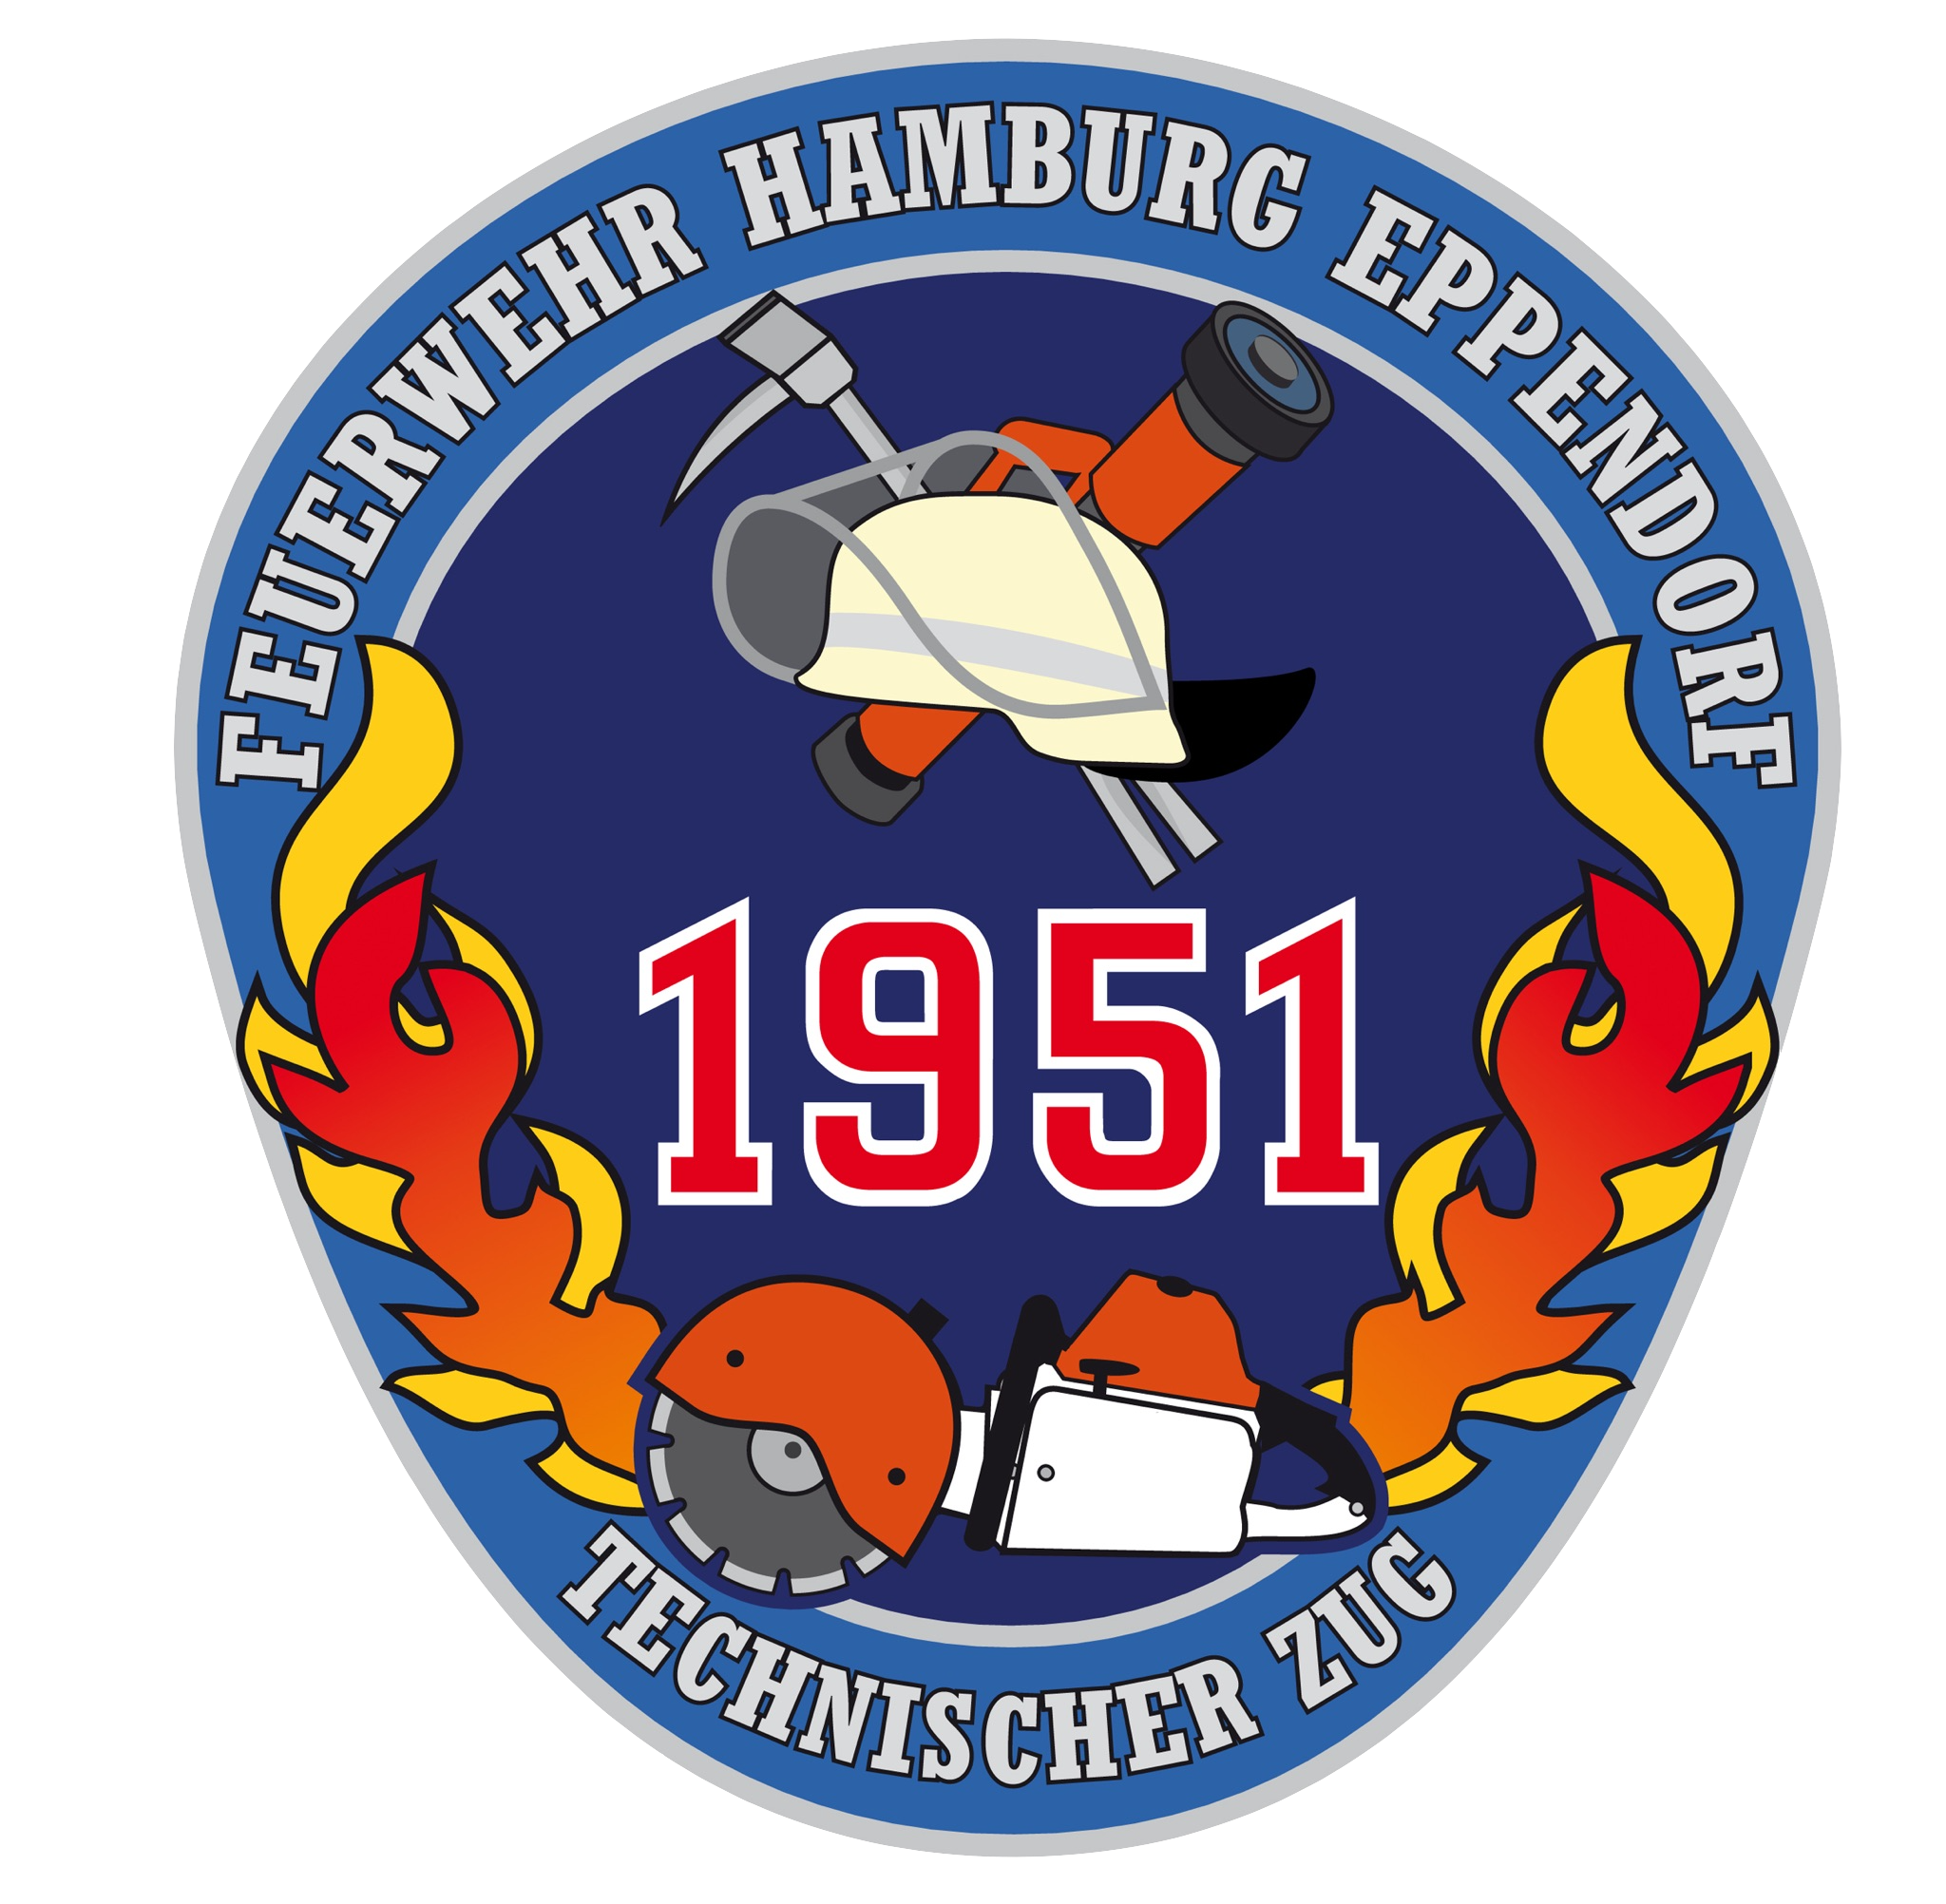 Freiwillige Feuerwehr Hamburg-Eppendorf logo